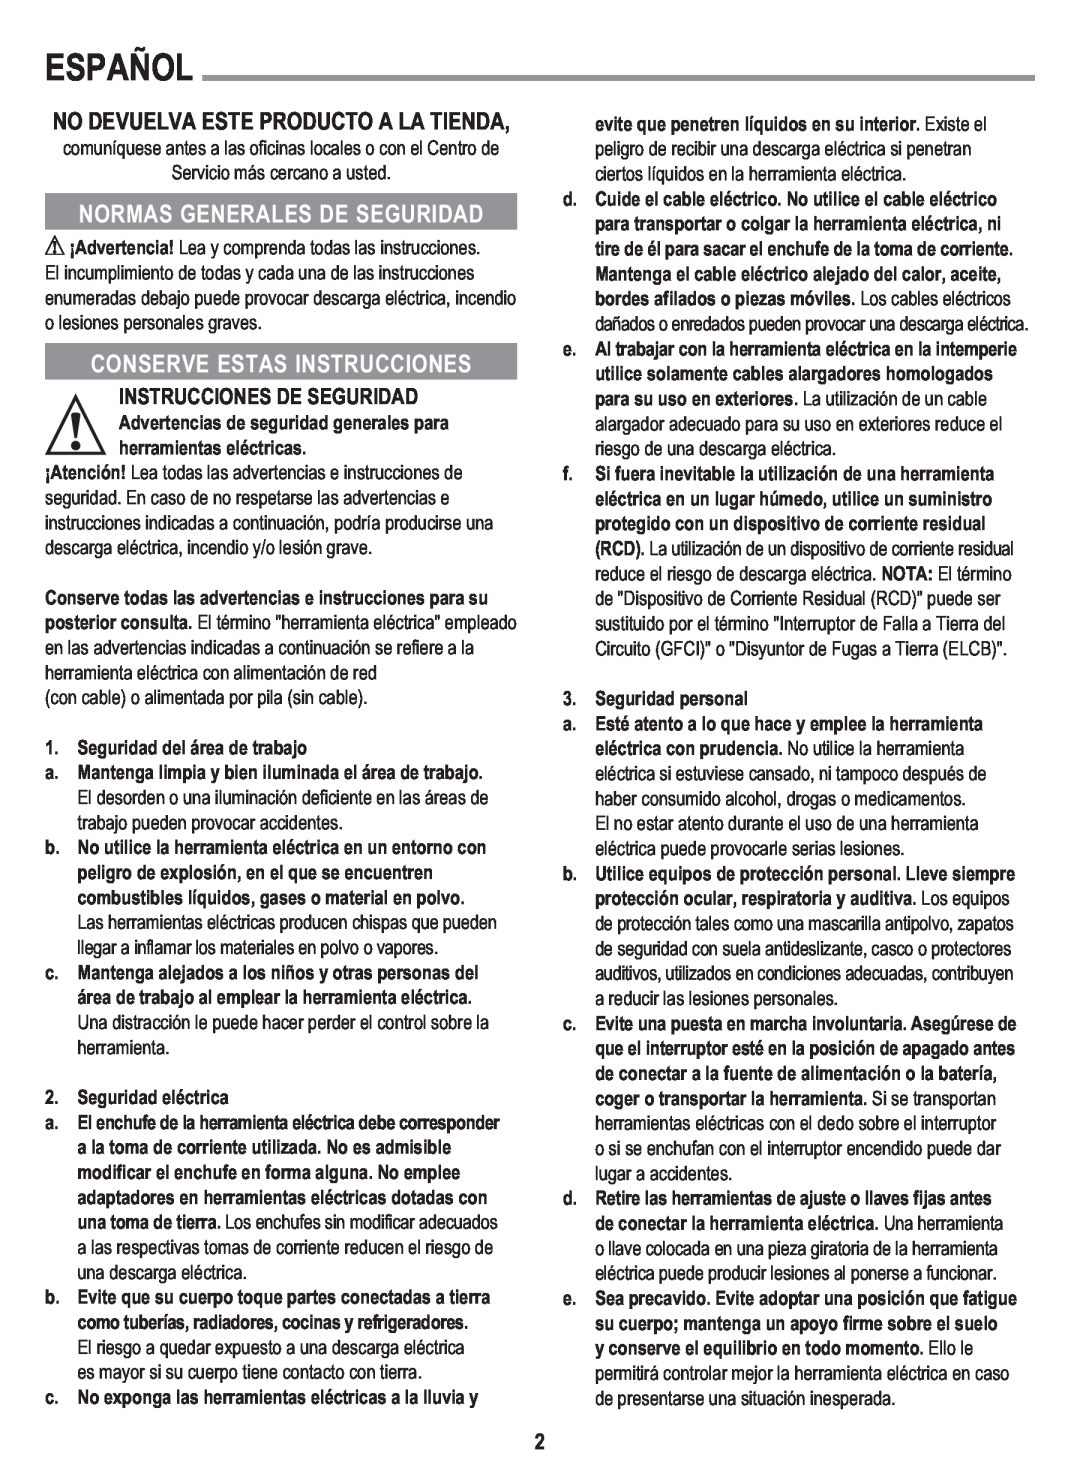 Black & Decker GL300 instruction manual Español, No Devuelva, Este Producto A La Tienda, Normas Gene Rales De Segu Ridad 